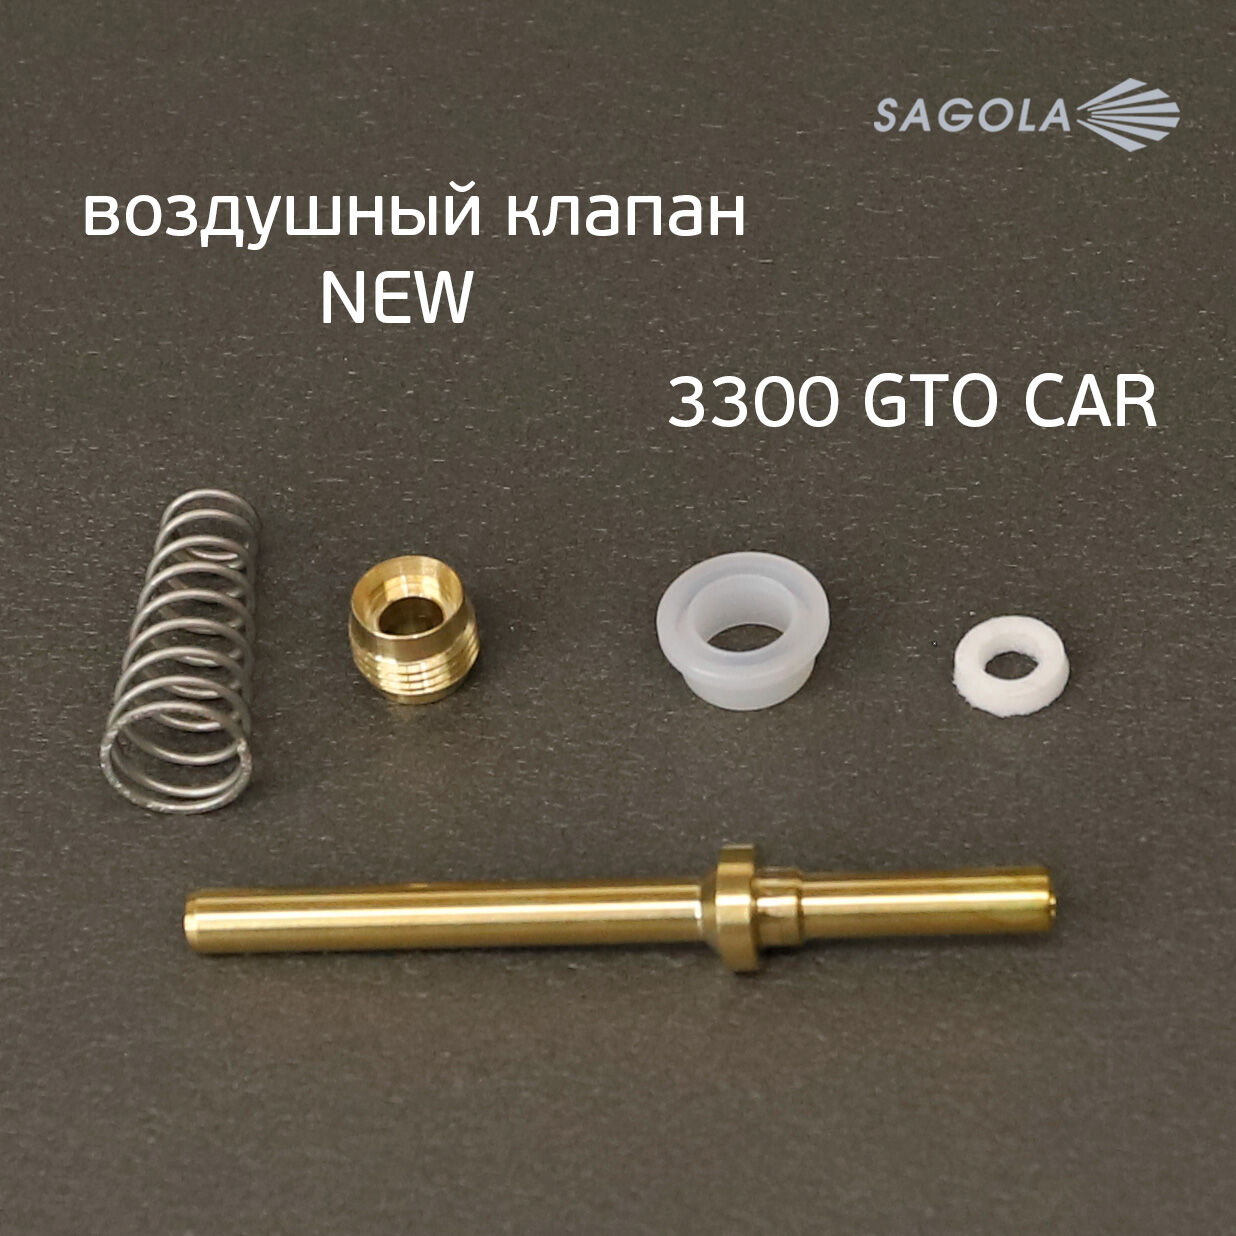 Воздушный клапан Sagola 3300 (обновленный) NEW для краскопульта